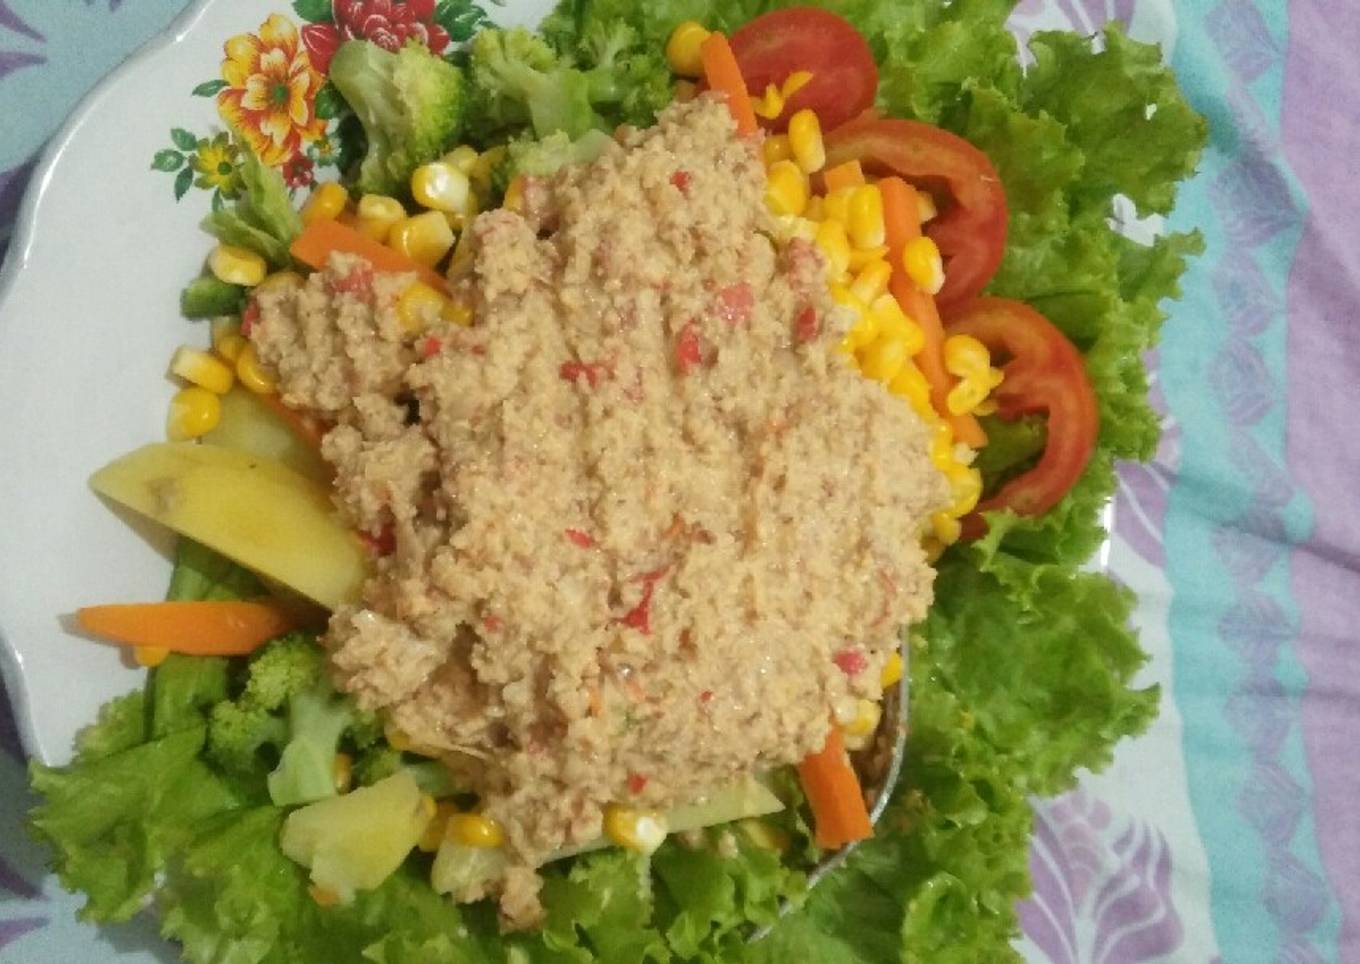 Salad dkah